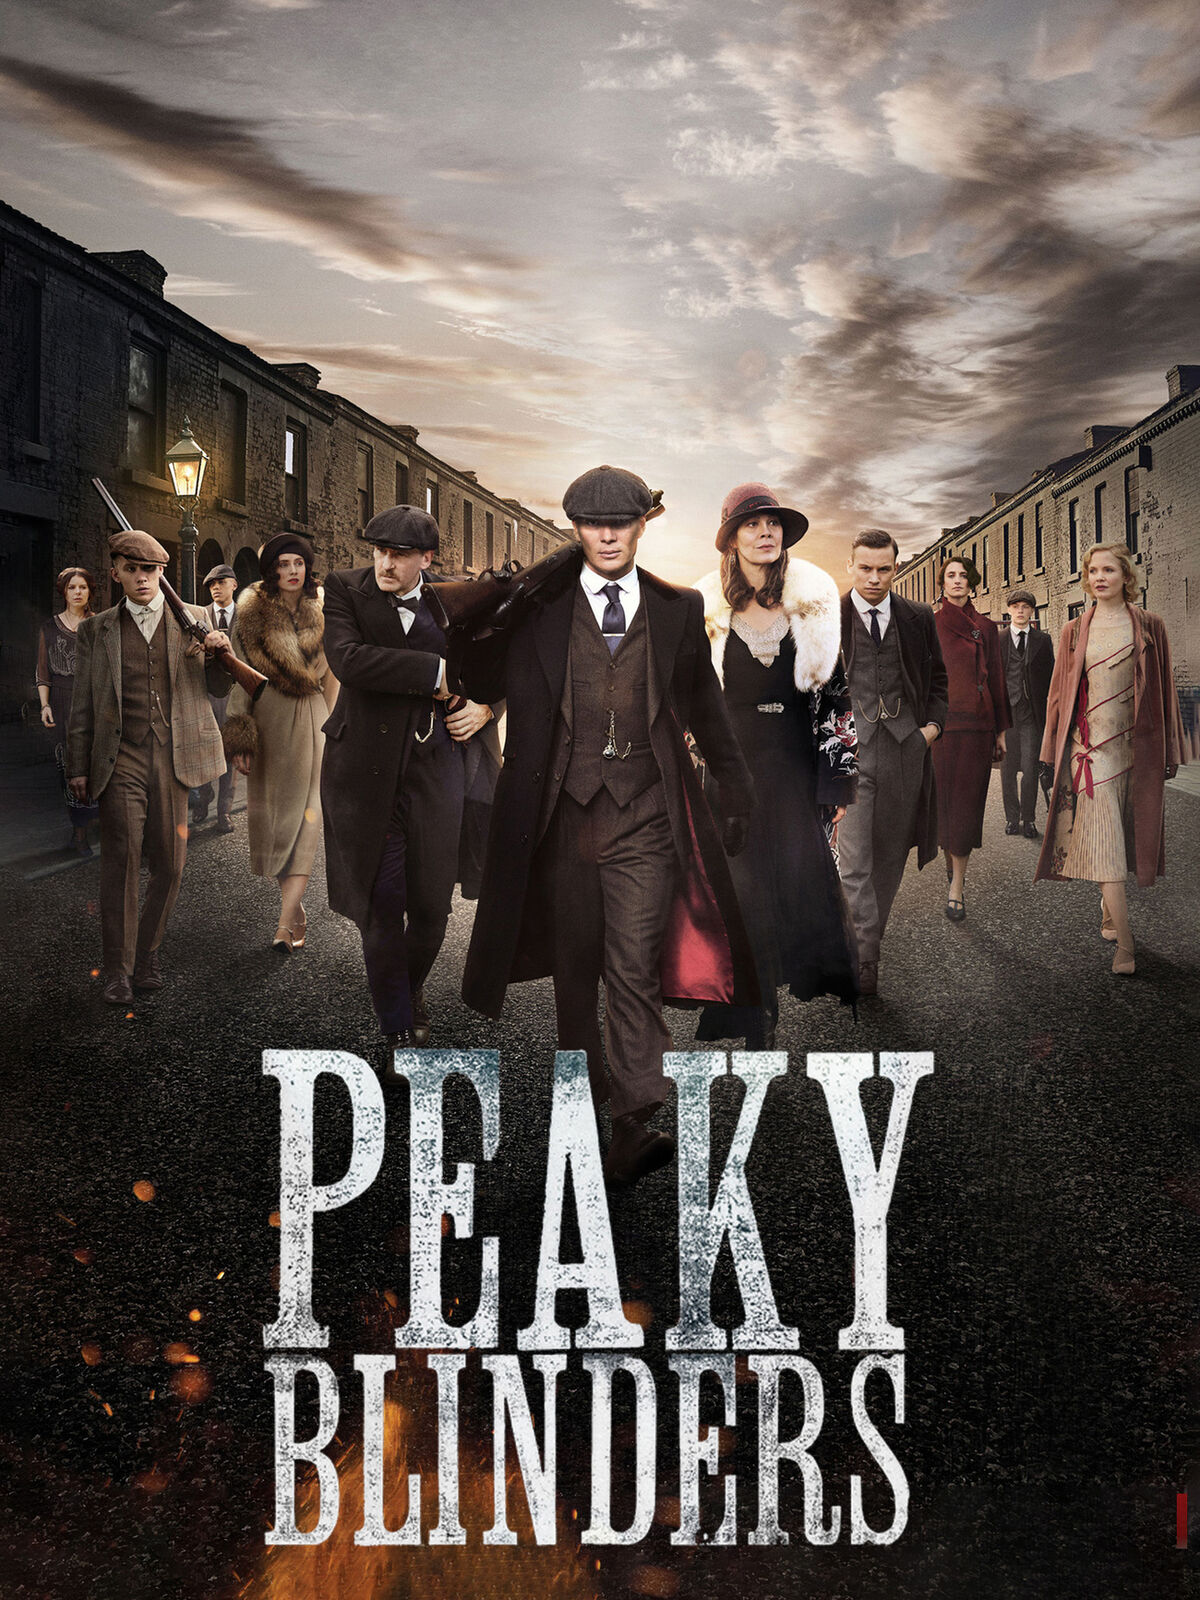 BBC One - Peaky Blinders, Series 3, Episode 6